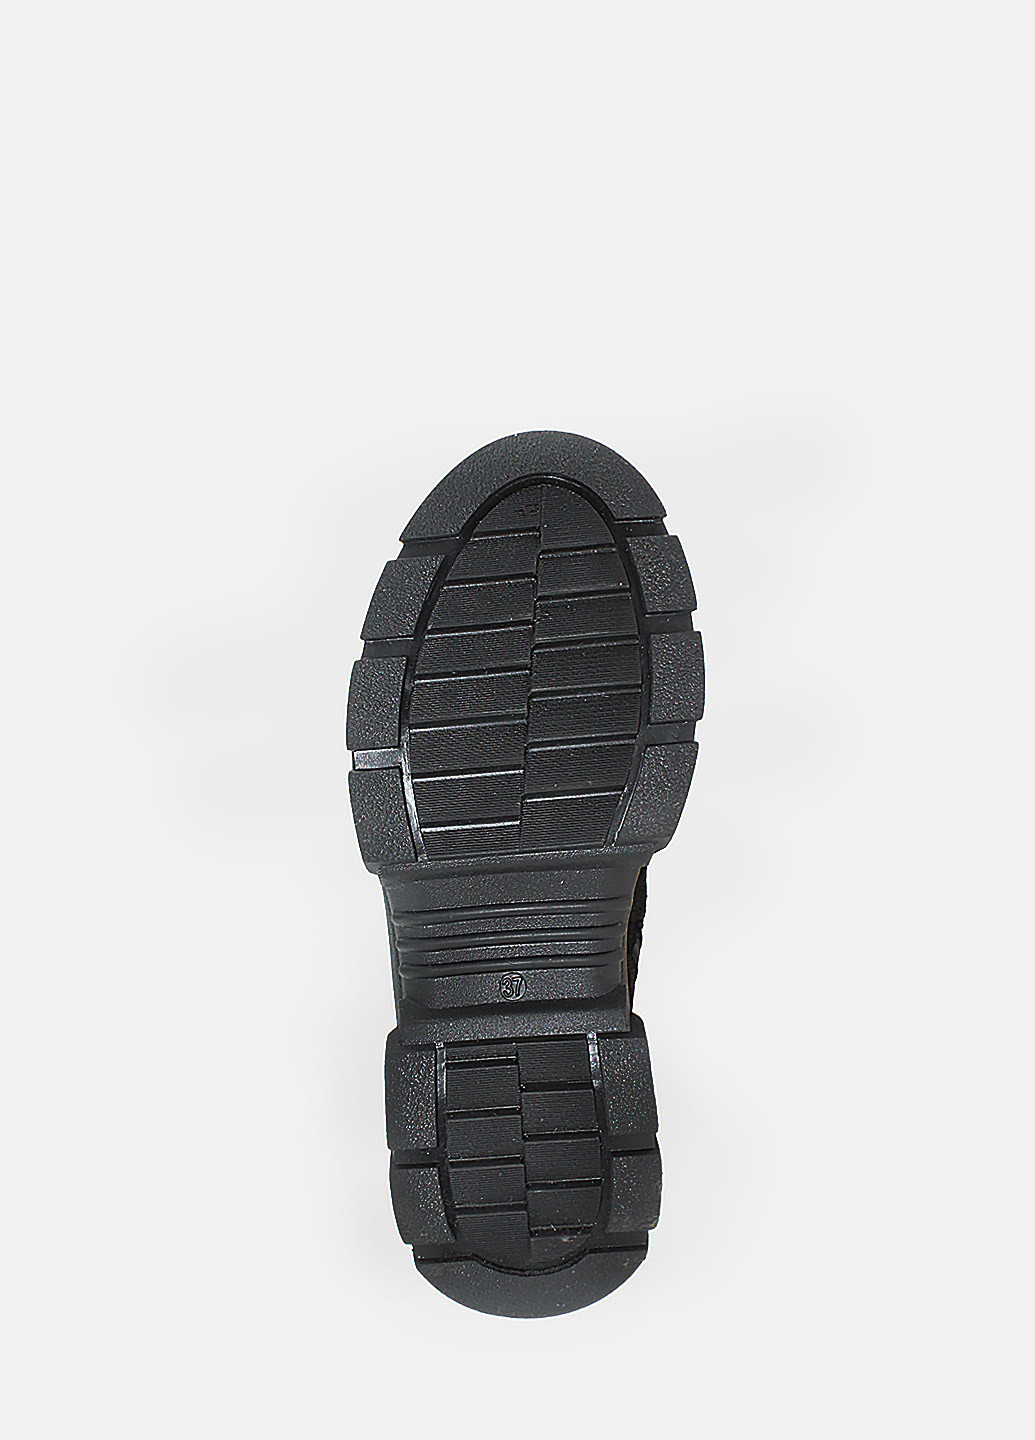 Осенние ботинки ra20222 черный Alvista из натуральной замши